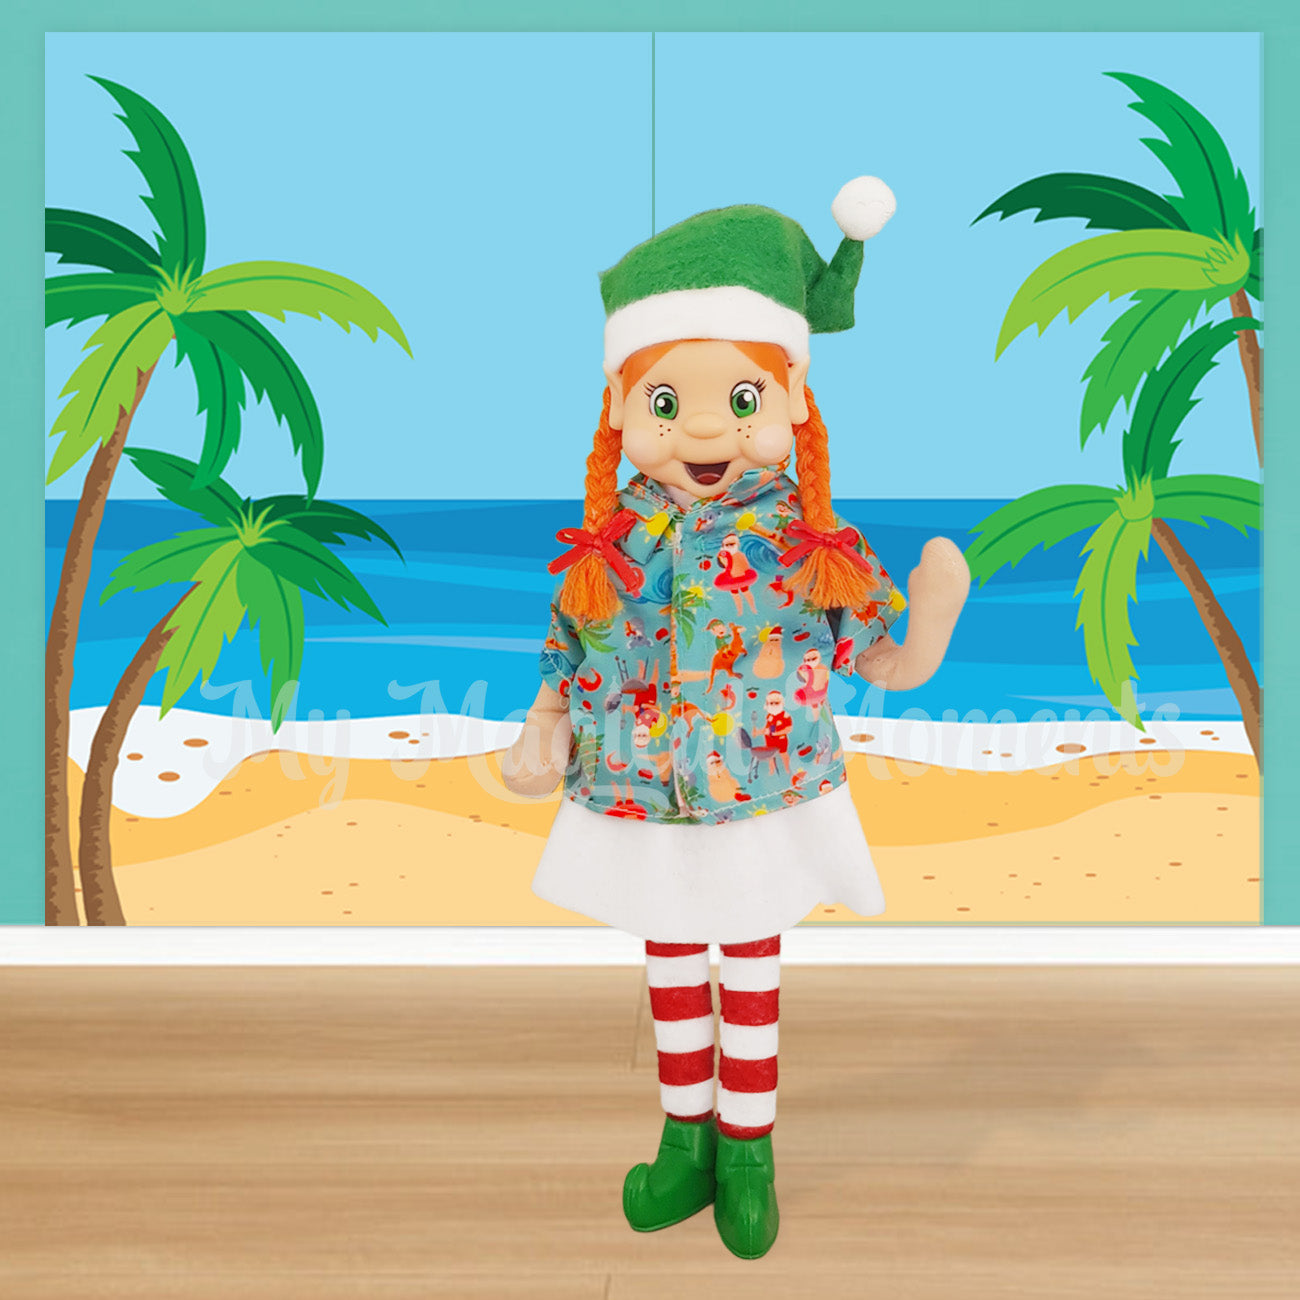 Orange hair elf girl wearing a Hawaiian shirt